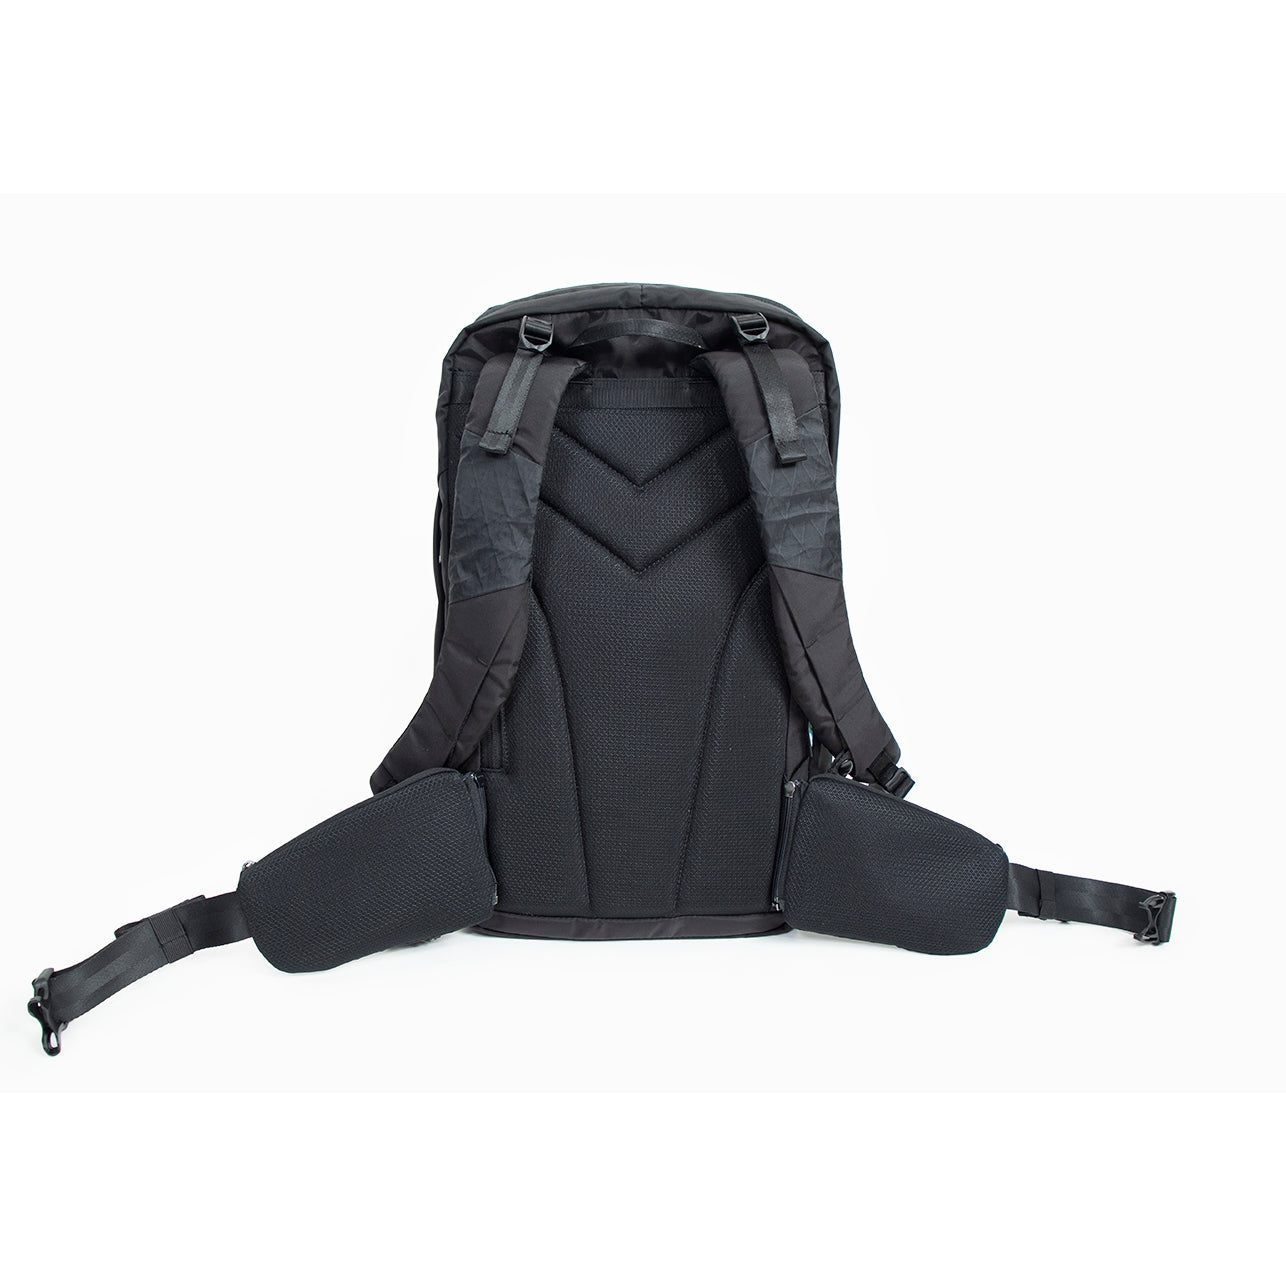 Stargazer Black Backpack